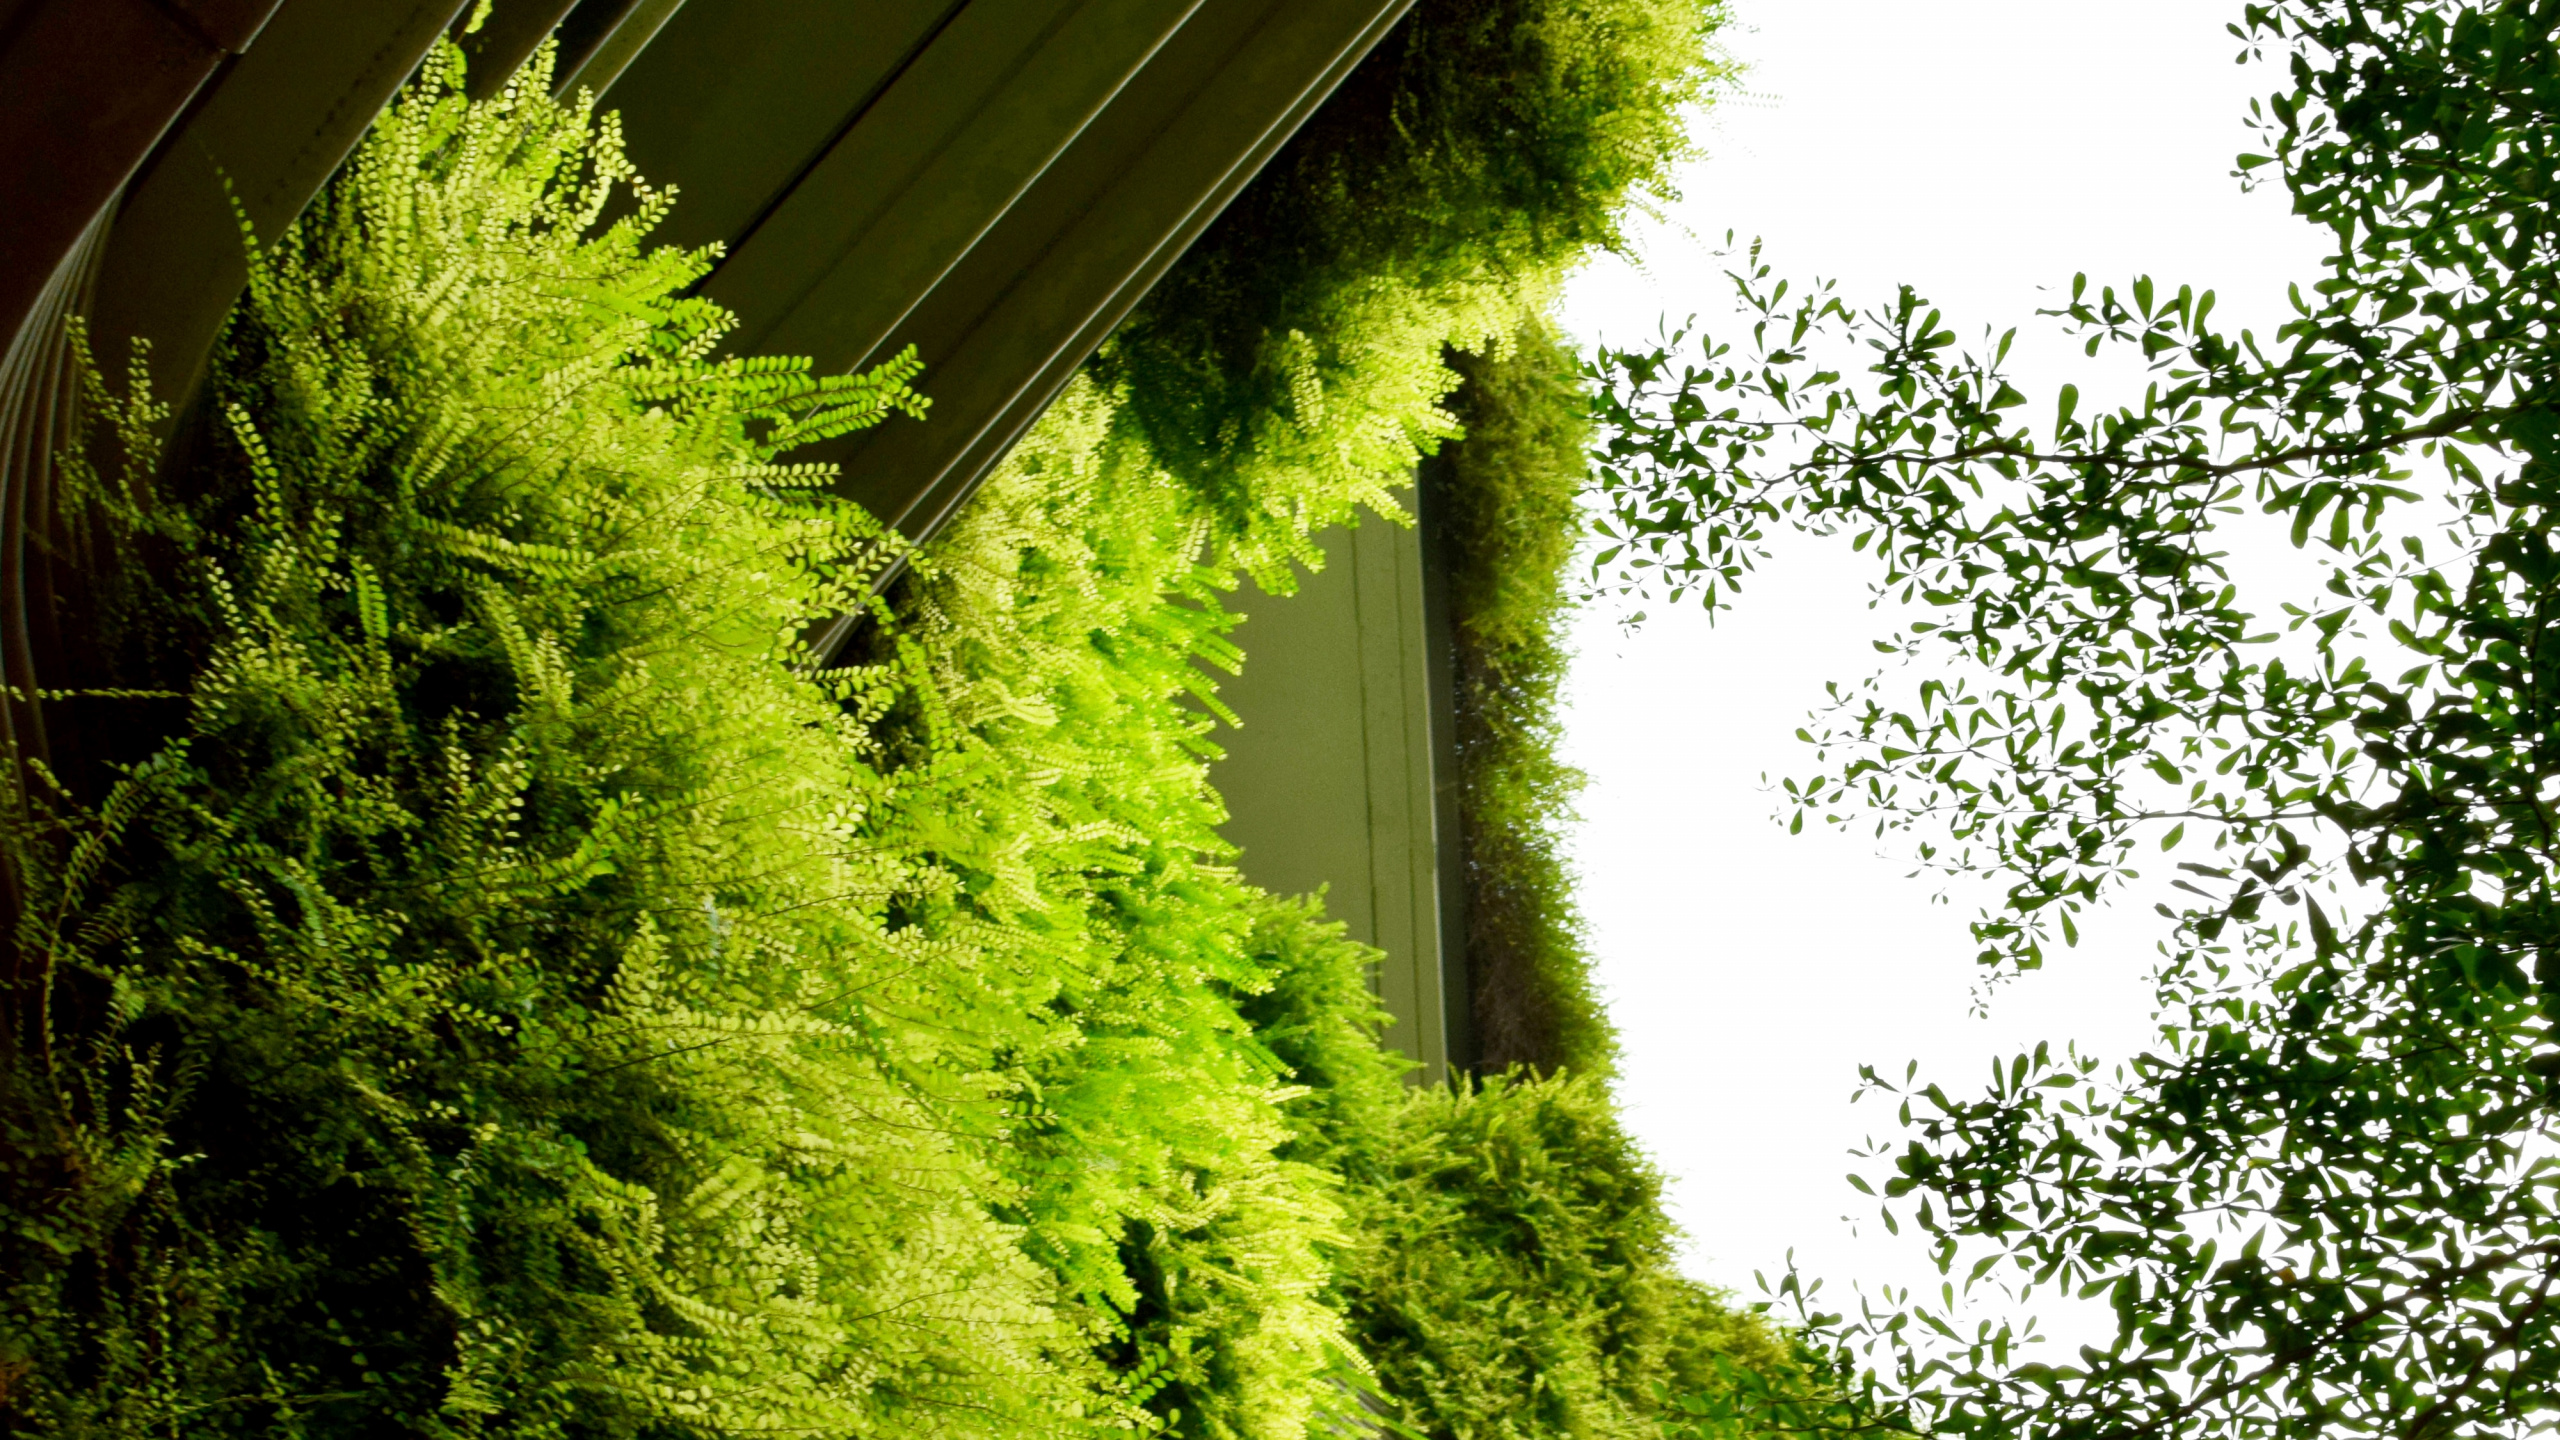 菌群, 绿色的, 植被, 性质, 草 壁纸 2560x1440 允许